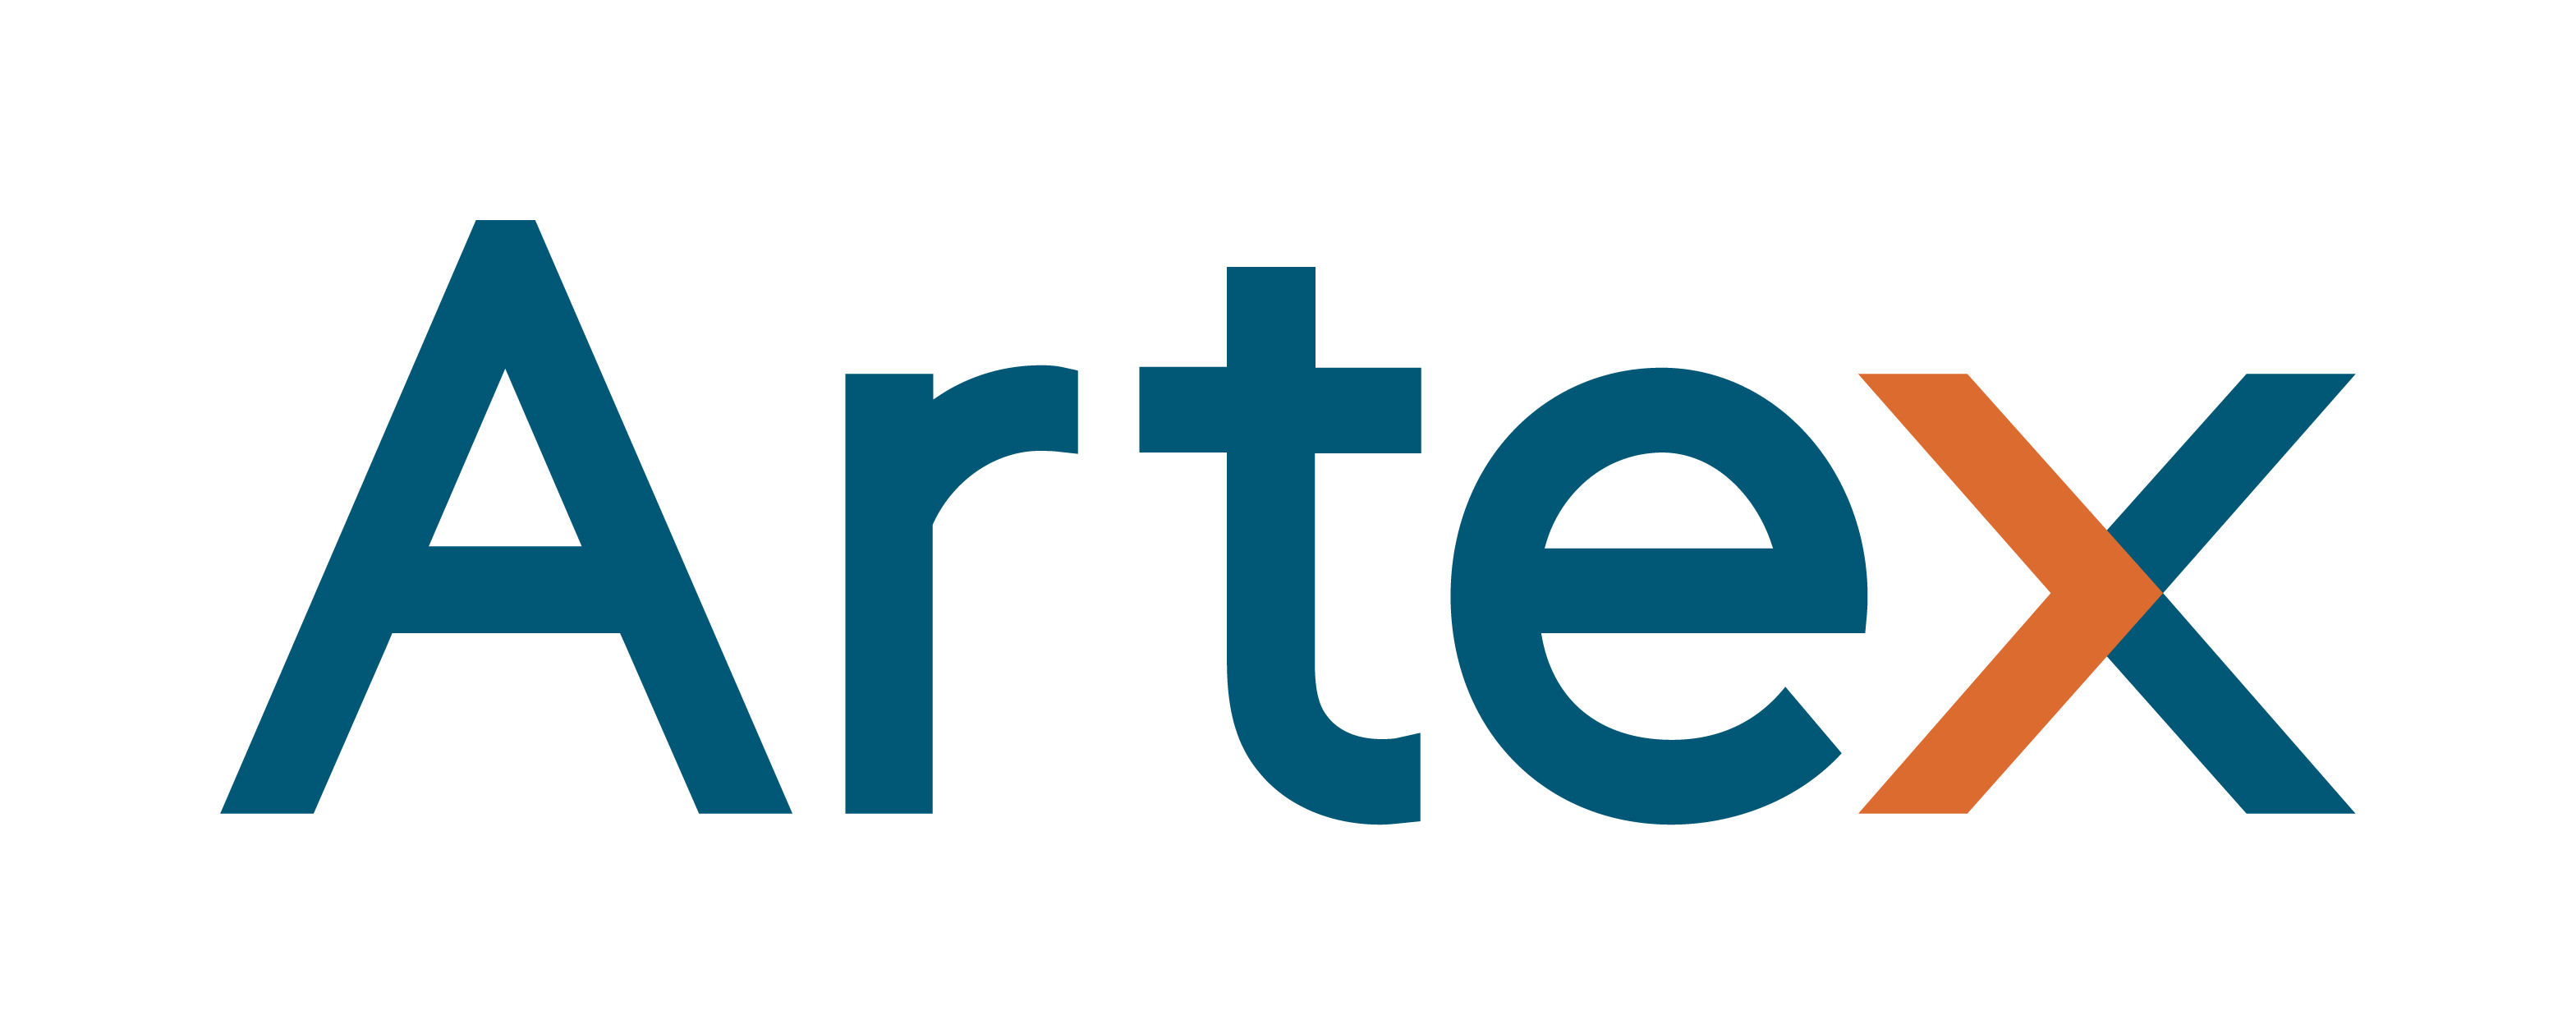 Artex_Logo.png